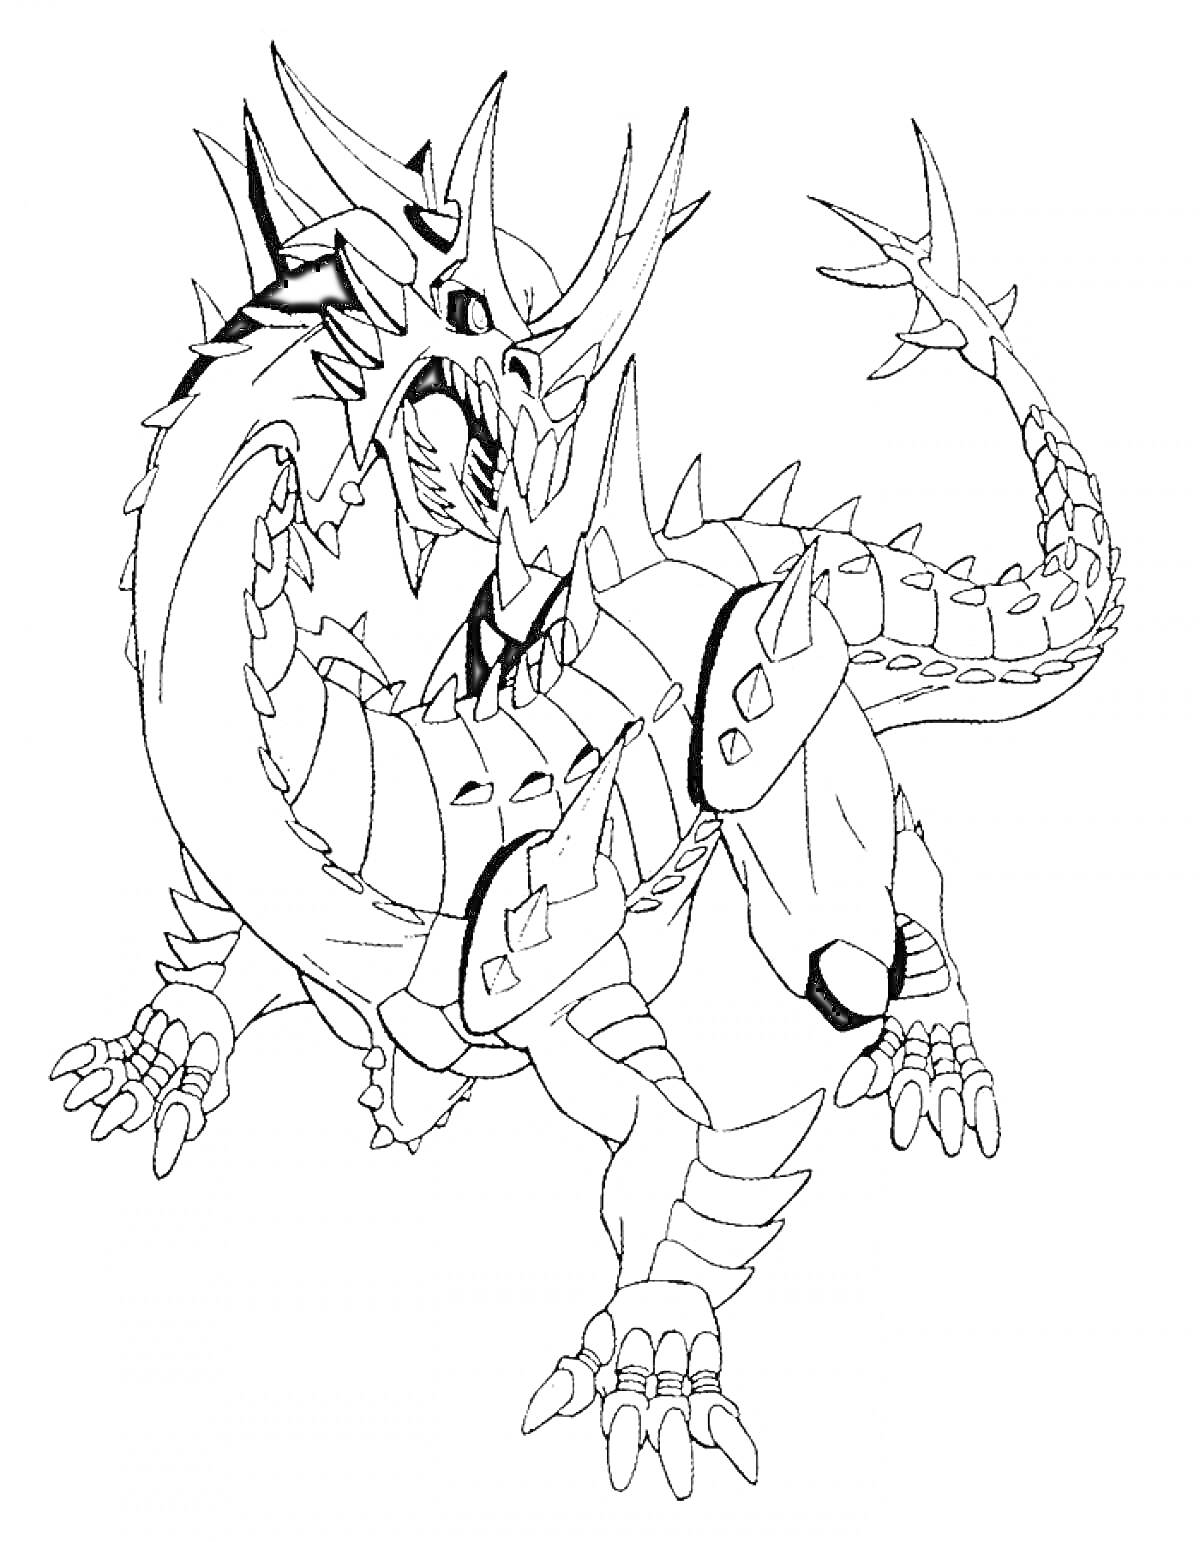 Дракон Бакуган с шипами и бронированным телом